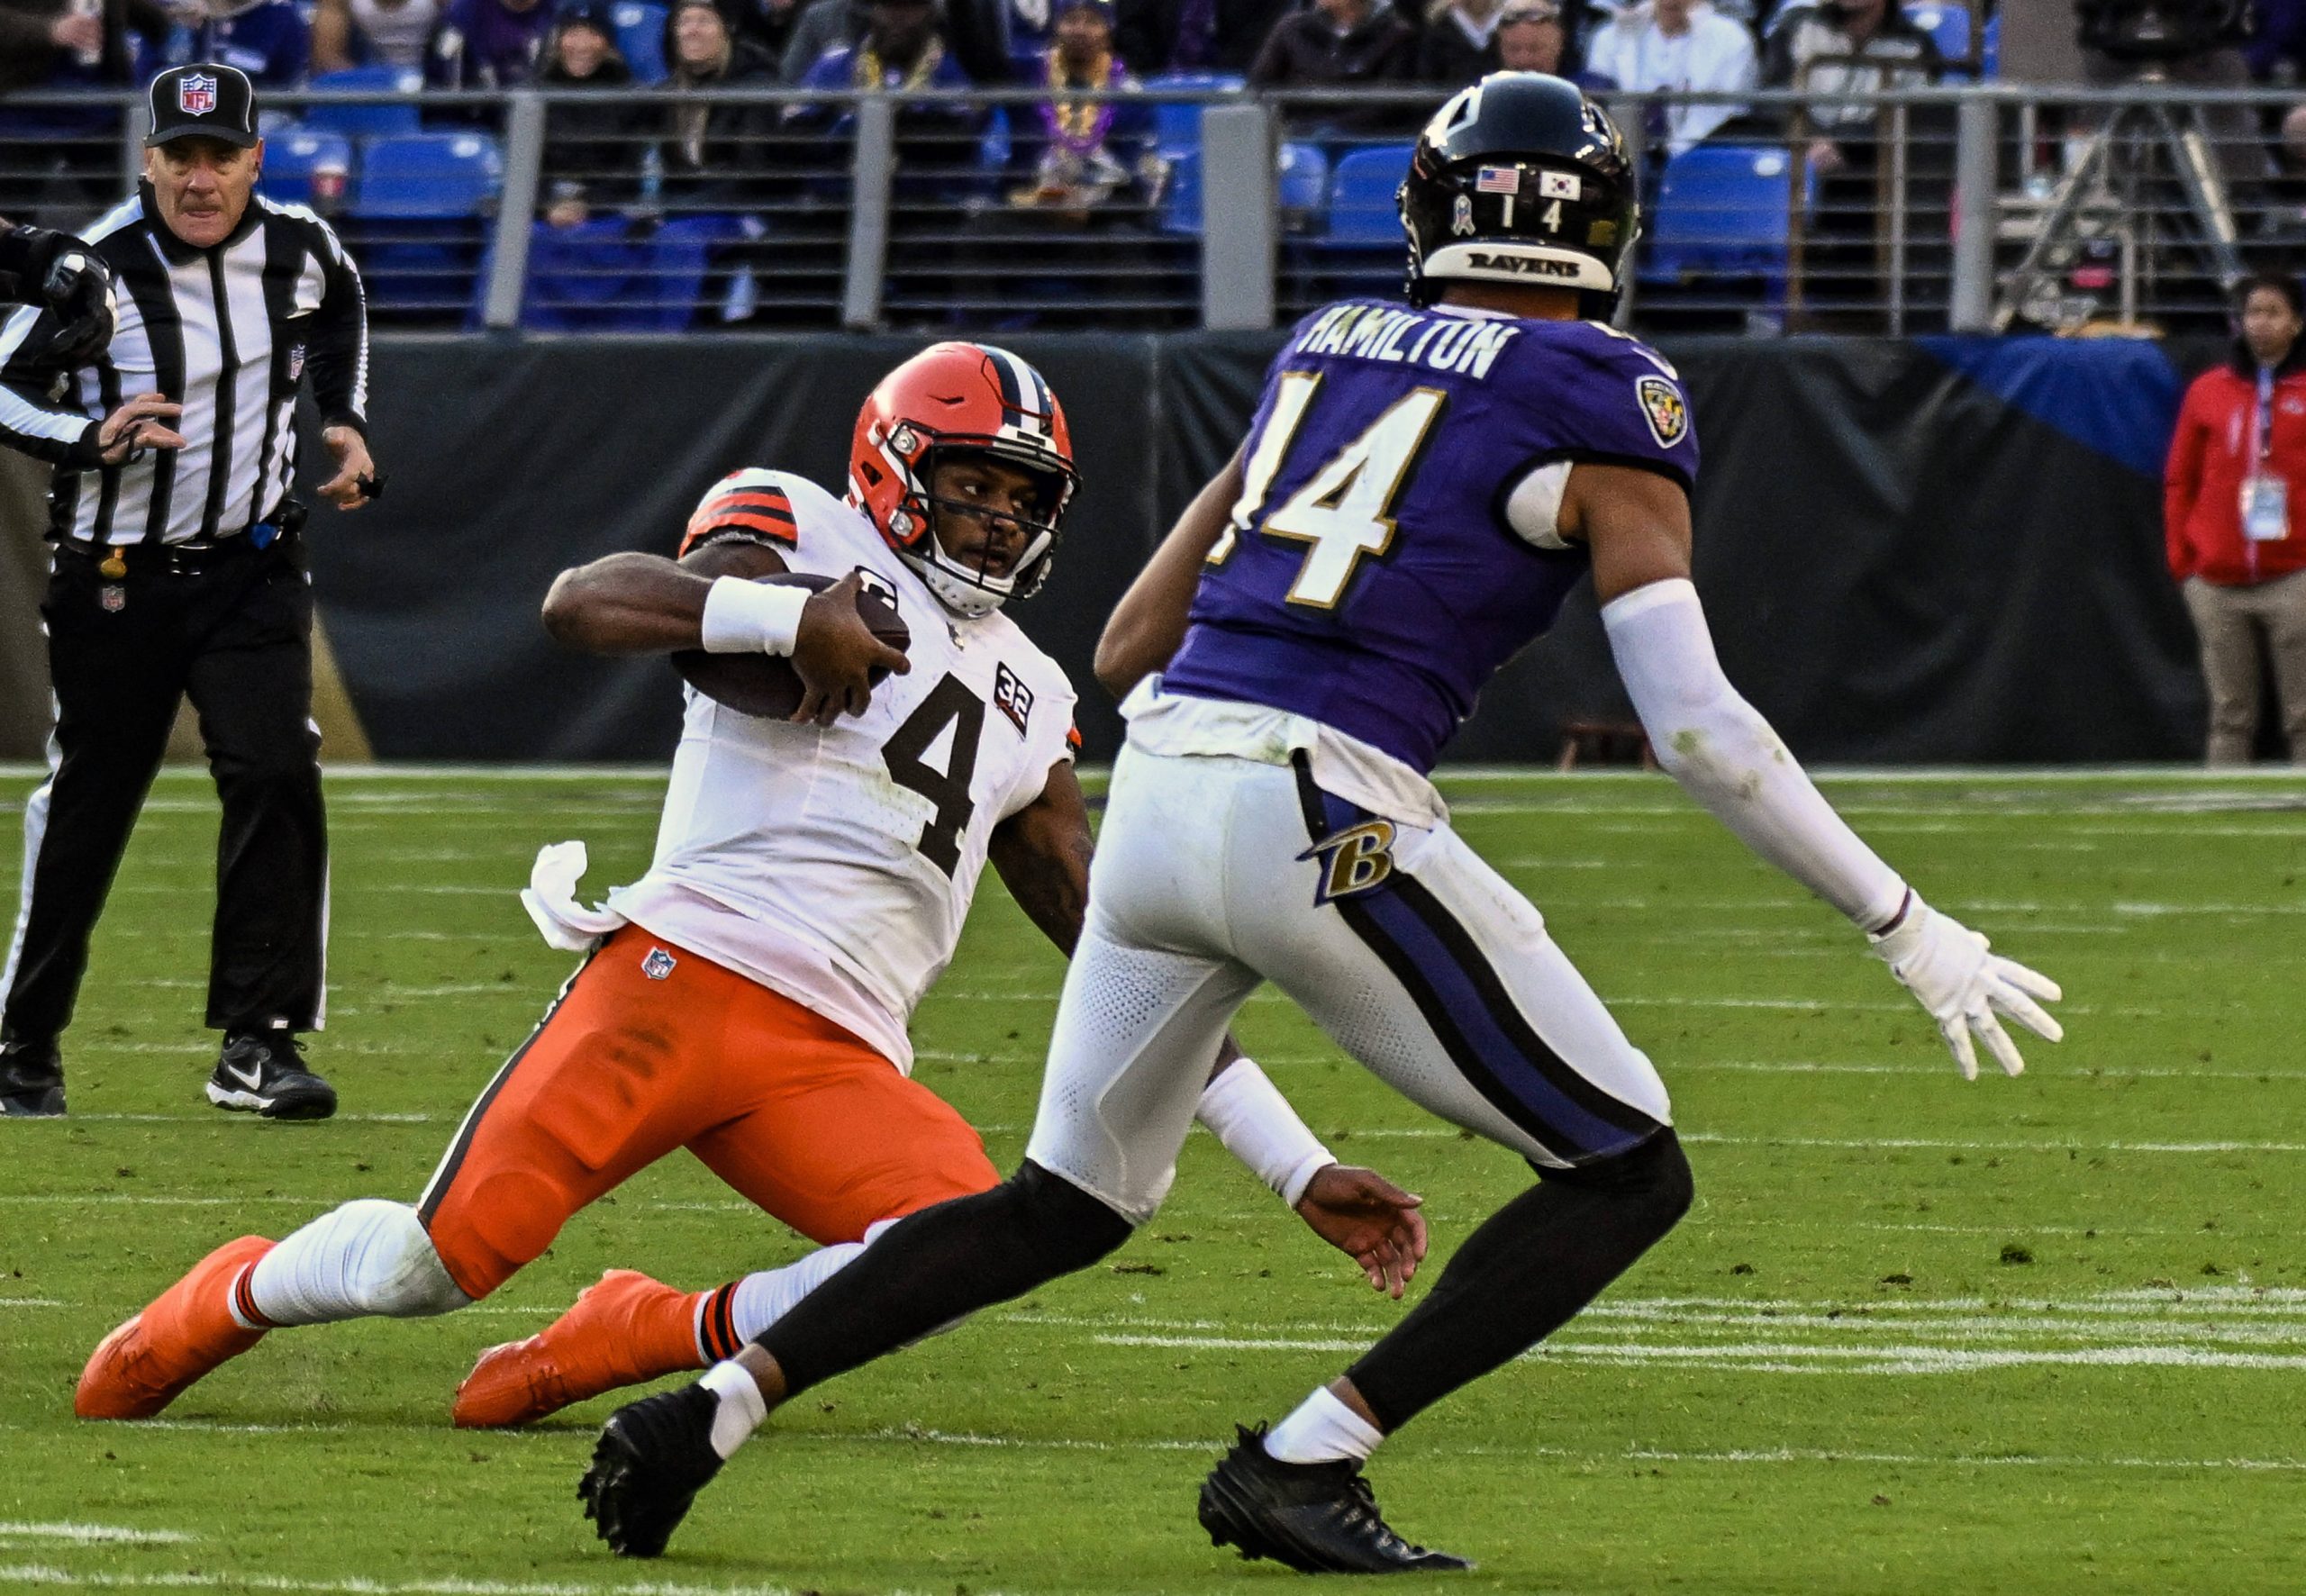 FootballR - NFL - Deshaun Watson - Das mit Spannung erwartete Spiel zwischen den Cleveland Browns und den Baltimore Ravens dürfte ein spannendes Duell auf dem Footballplatz werden. Die Fans haben den Showdown zwischen diesen beiden rivalisierenden Teams in der laufenden Saison mit Spannung erwartet.